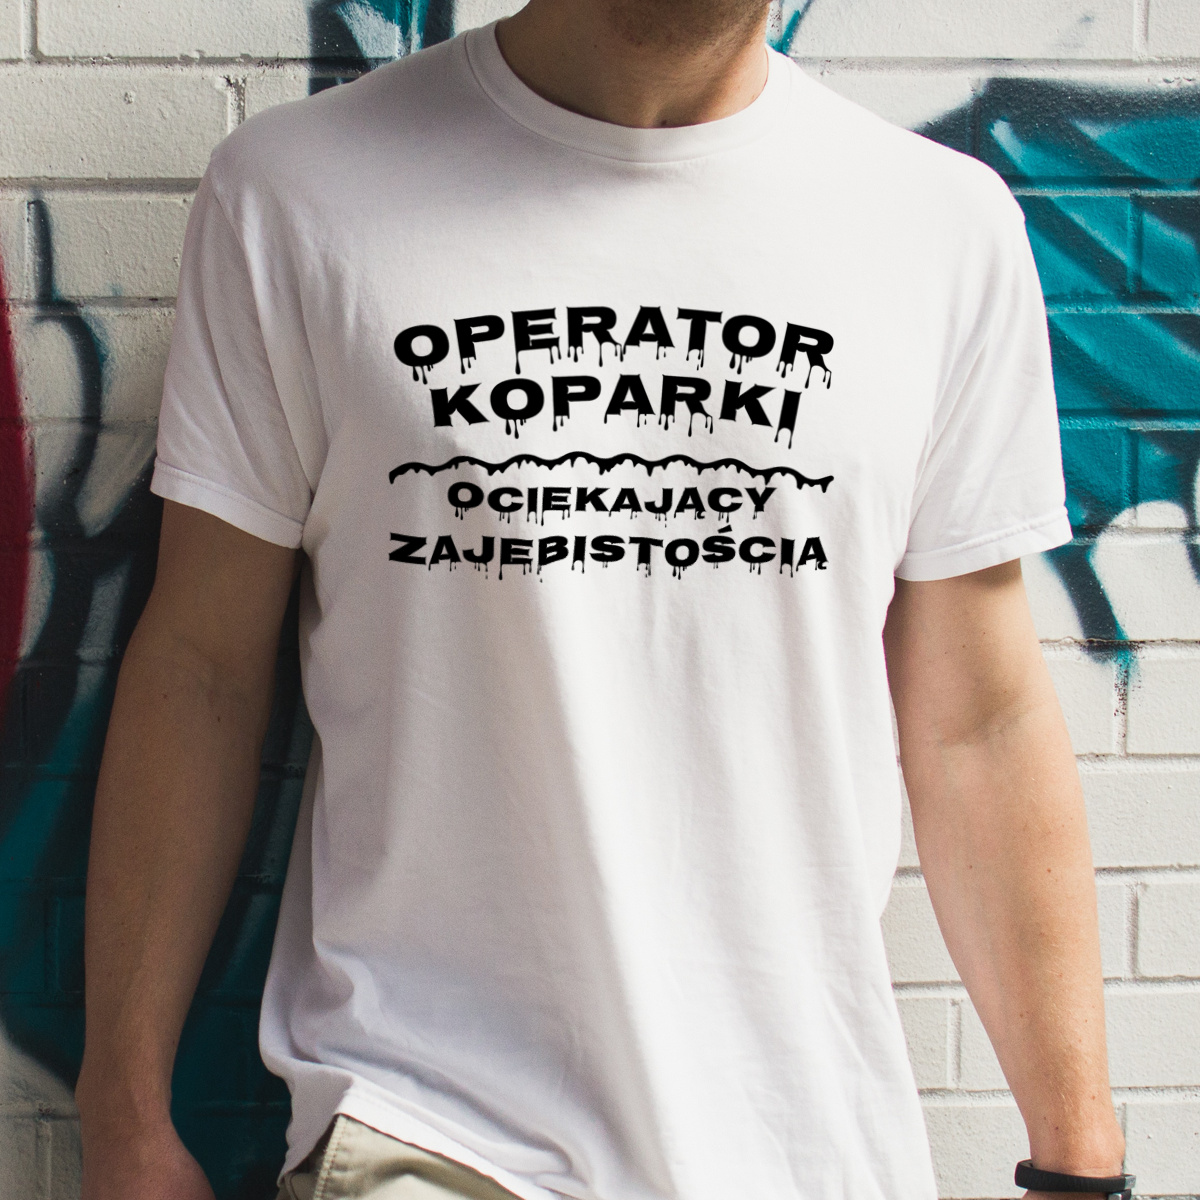 Operator Koparki Ociekający Zajebistością - Męska Koszulka Biała